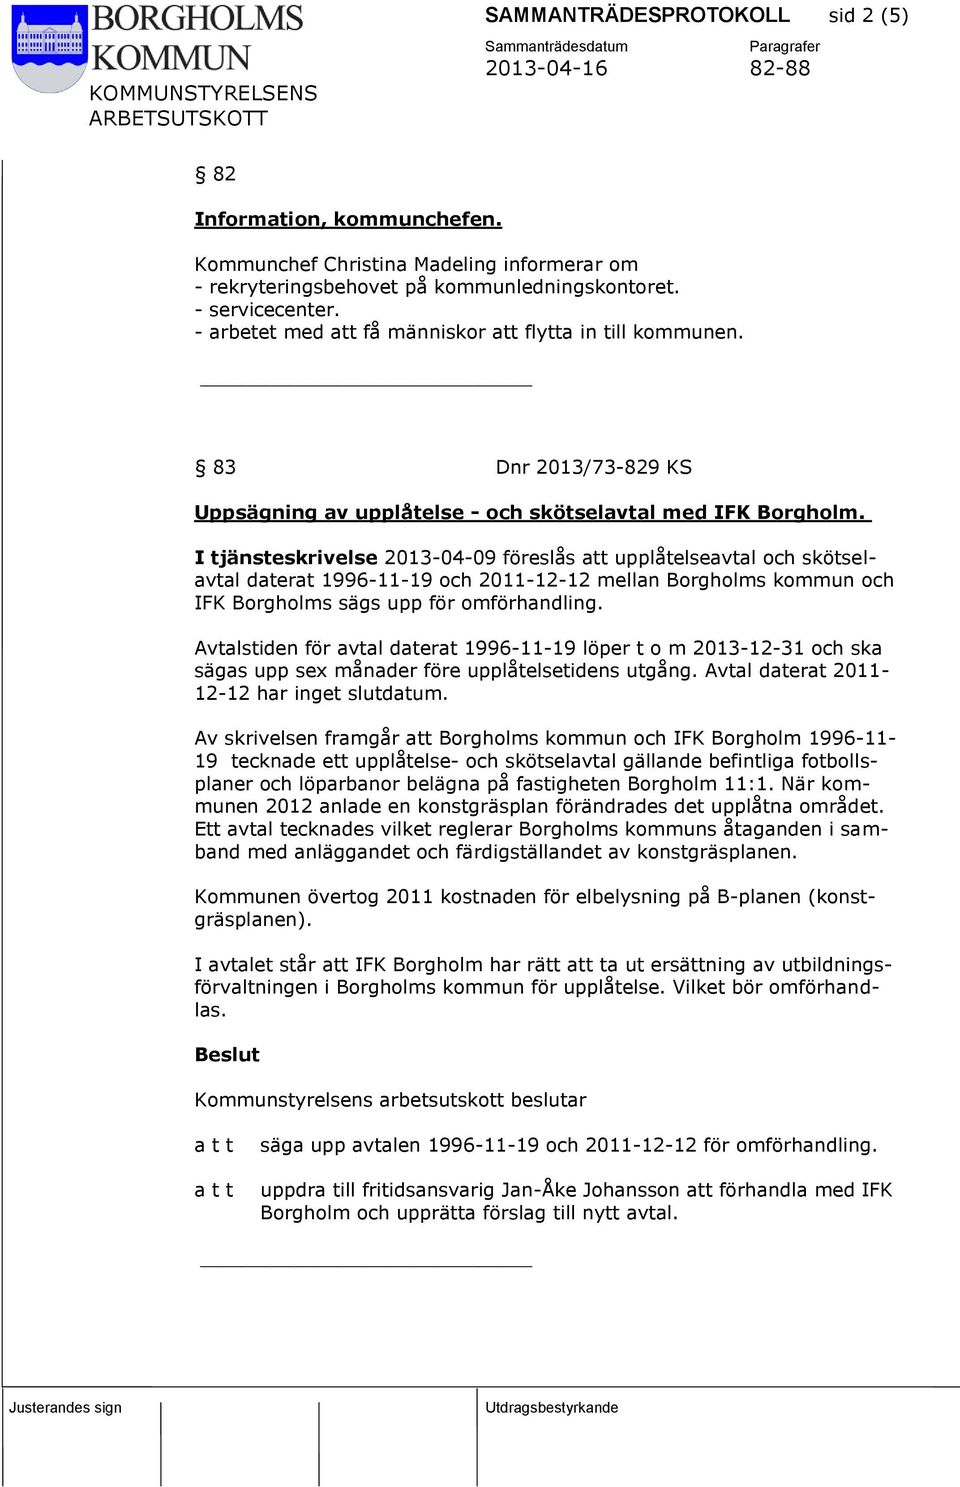 I tjänsteskrivelse 2013-04-09 föreslås att upplåtelseavtal och skötselavtal daterat 1996-11-19 och 2011-12-12 mellan Borgholms kommun och IFK Borgholms sägs upp för omförhandling.